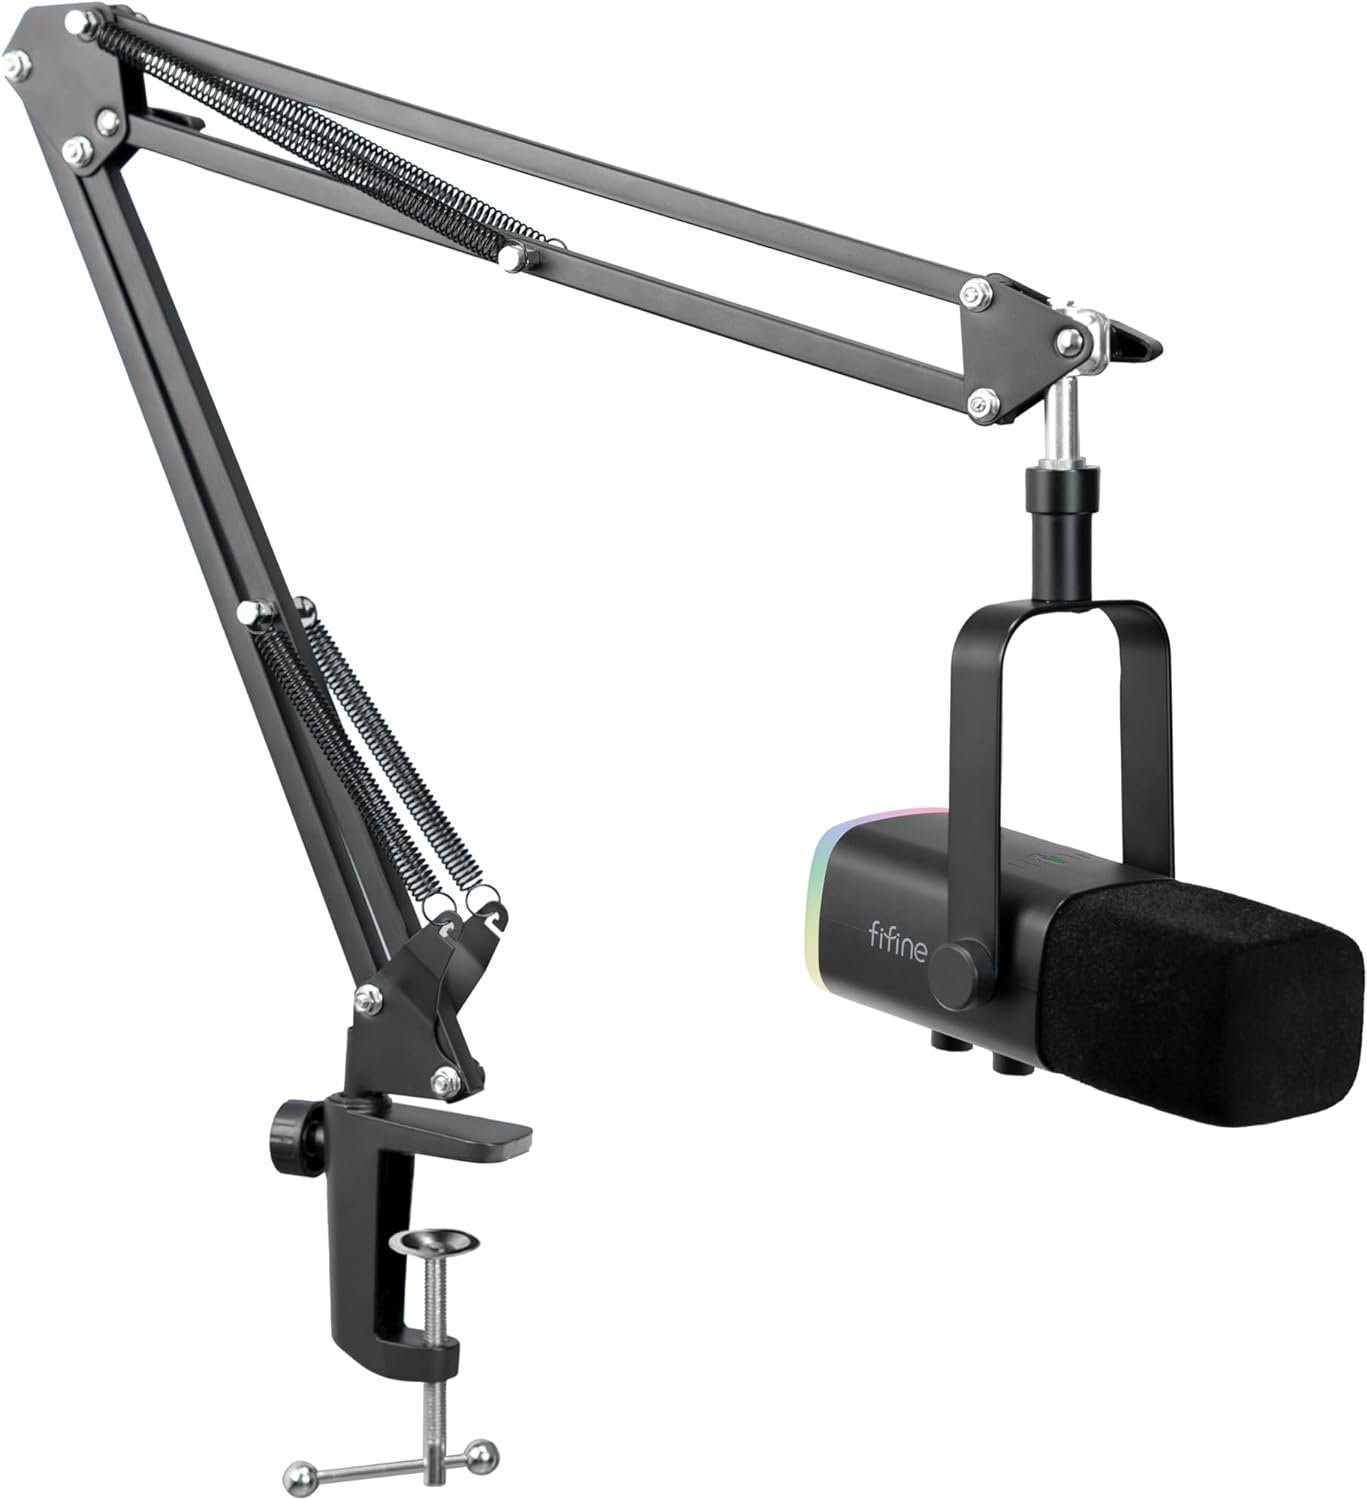 FIFINE Mikrofon XLR Streaming Mikrofon mit Arm für Podcast Studio Gaming Mikrofon, USB Dynamisch Microphone Gaming PC mit Stummschalttaste